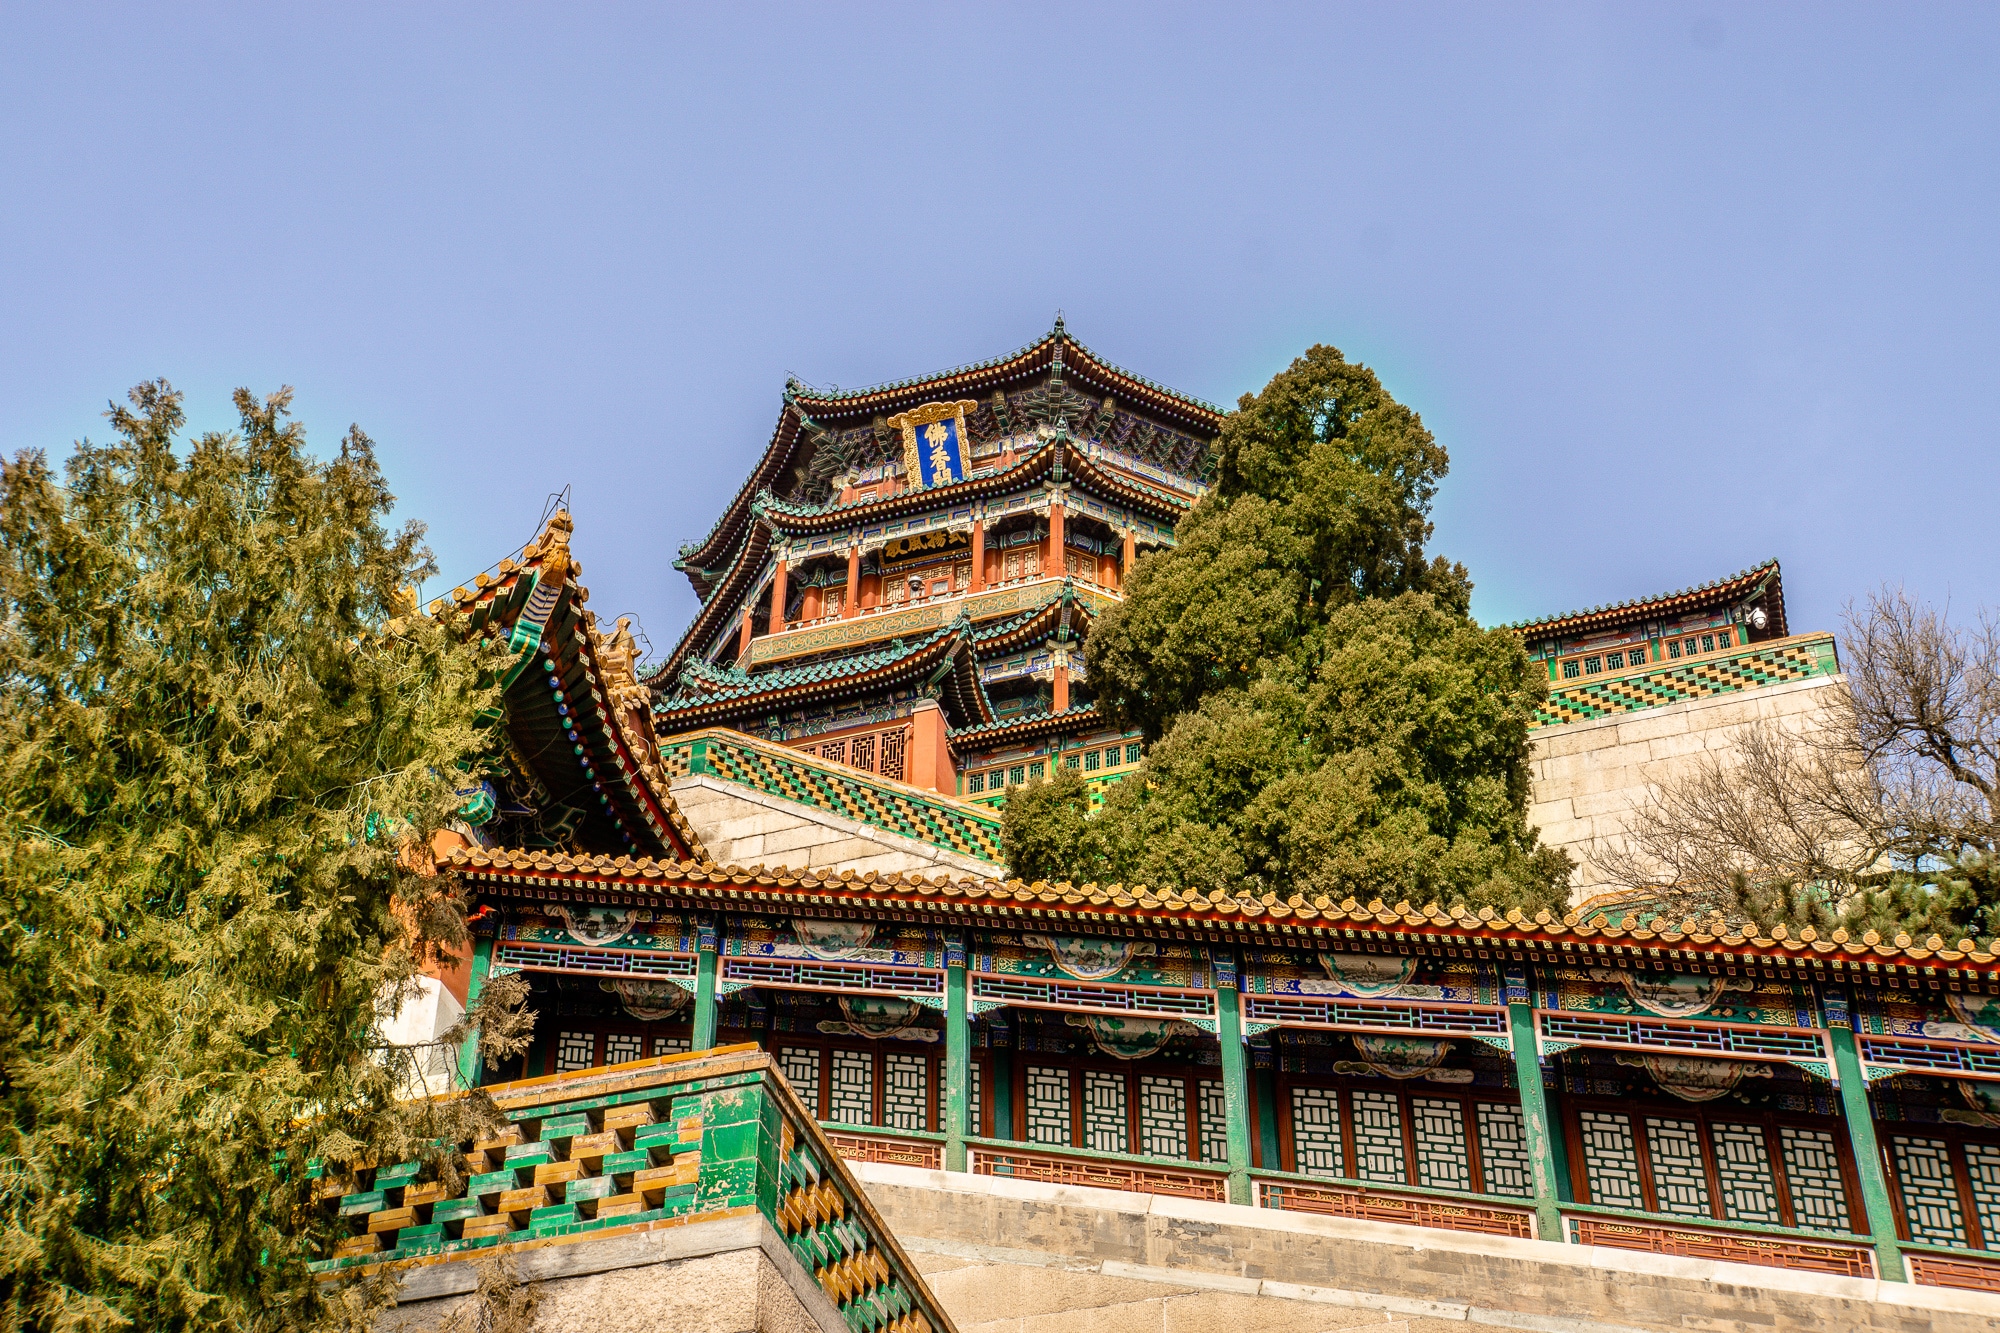 Sommerpalast in Peking: Die schönsten Sehenswürdigkeiten & Highlights - Pavillon des Buddhistischen Wohlgeruchs / Tower of Buddhist Incense